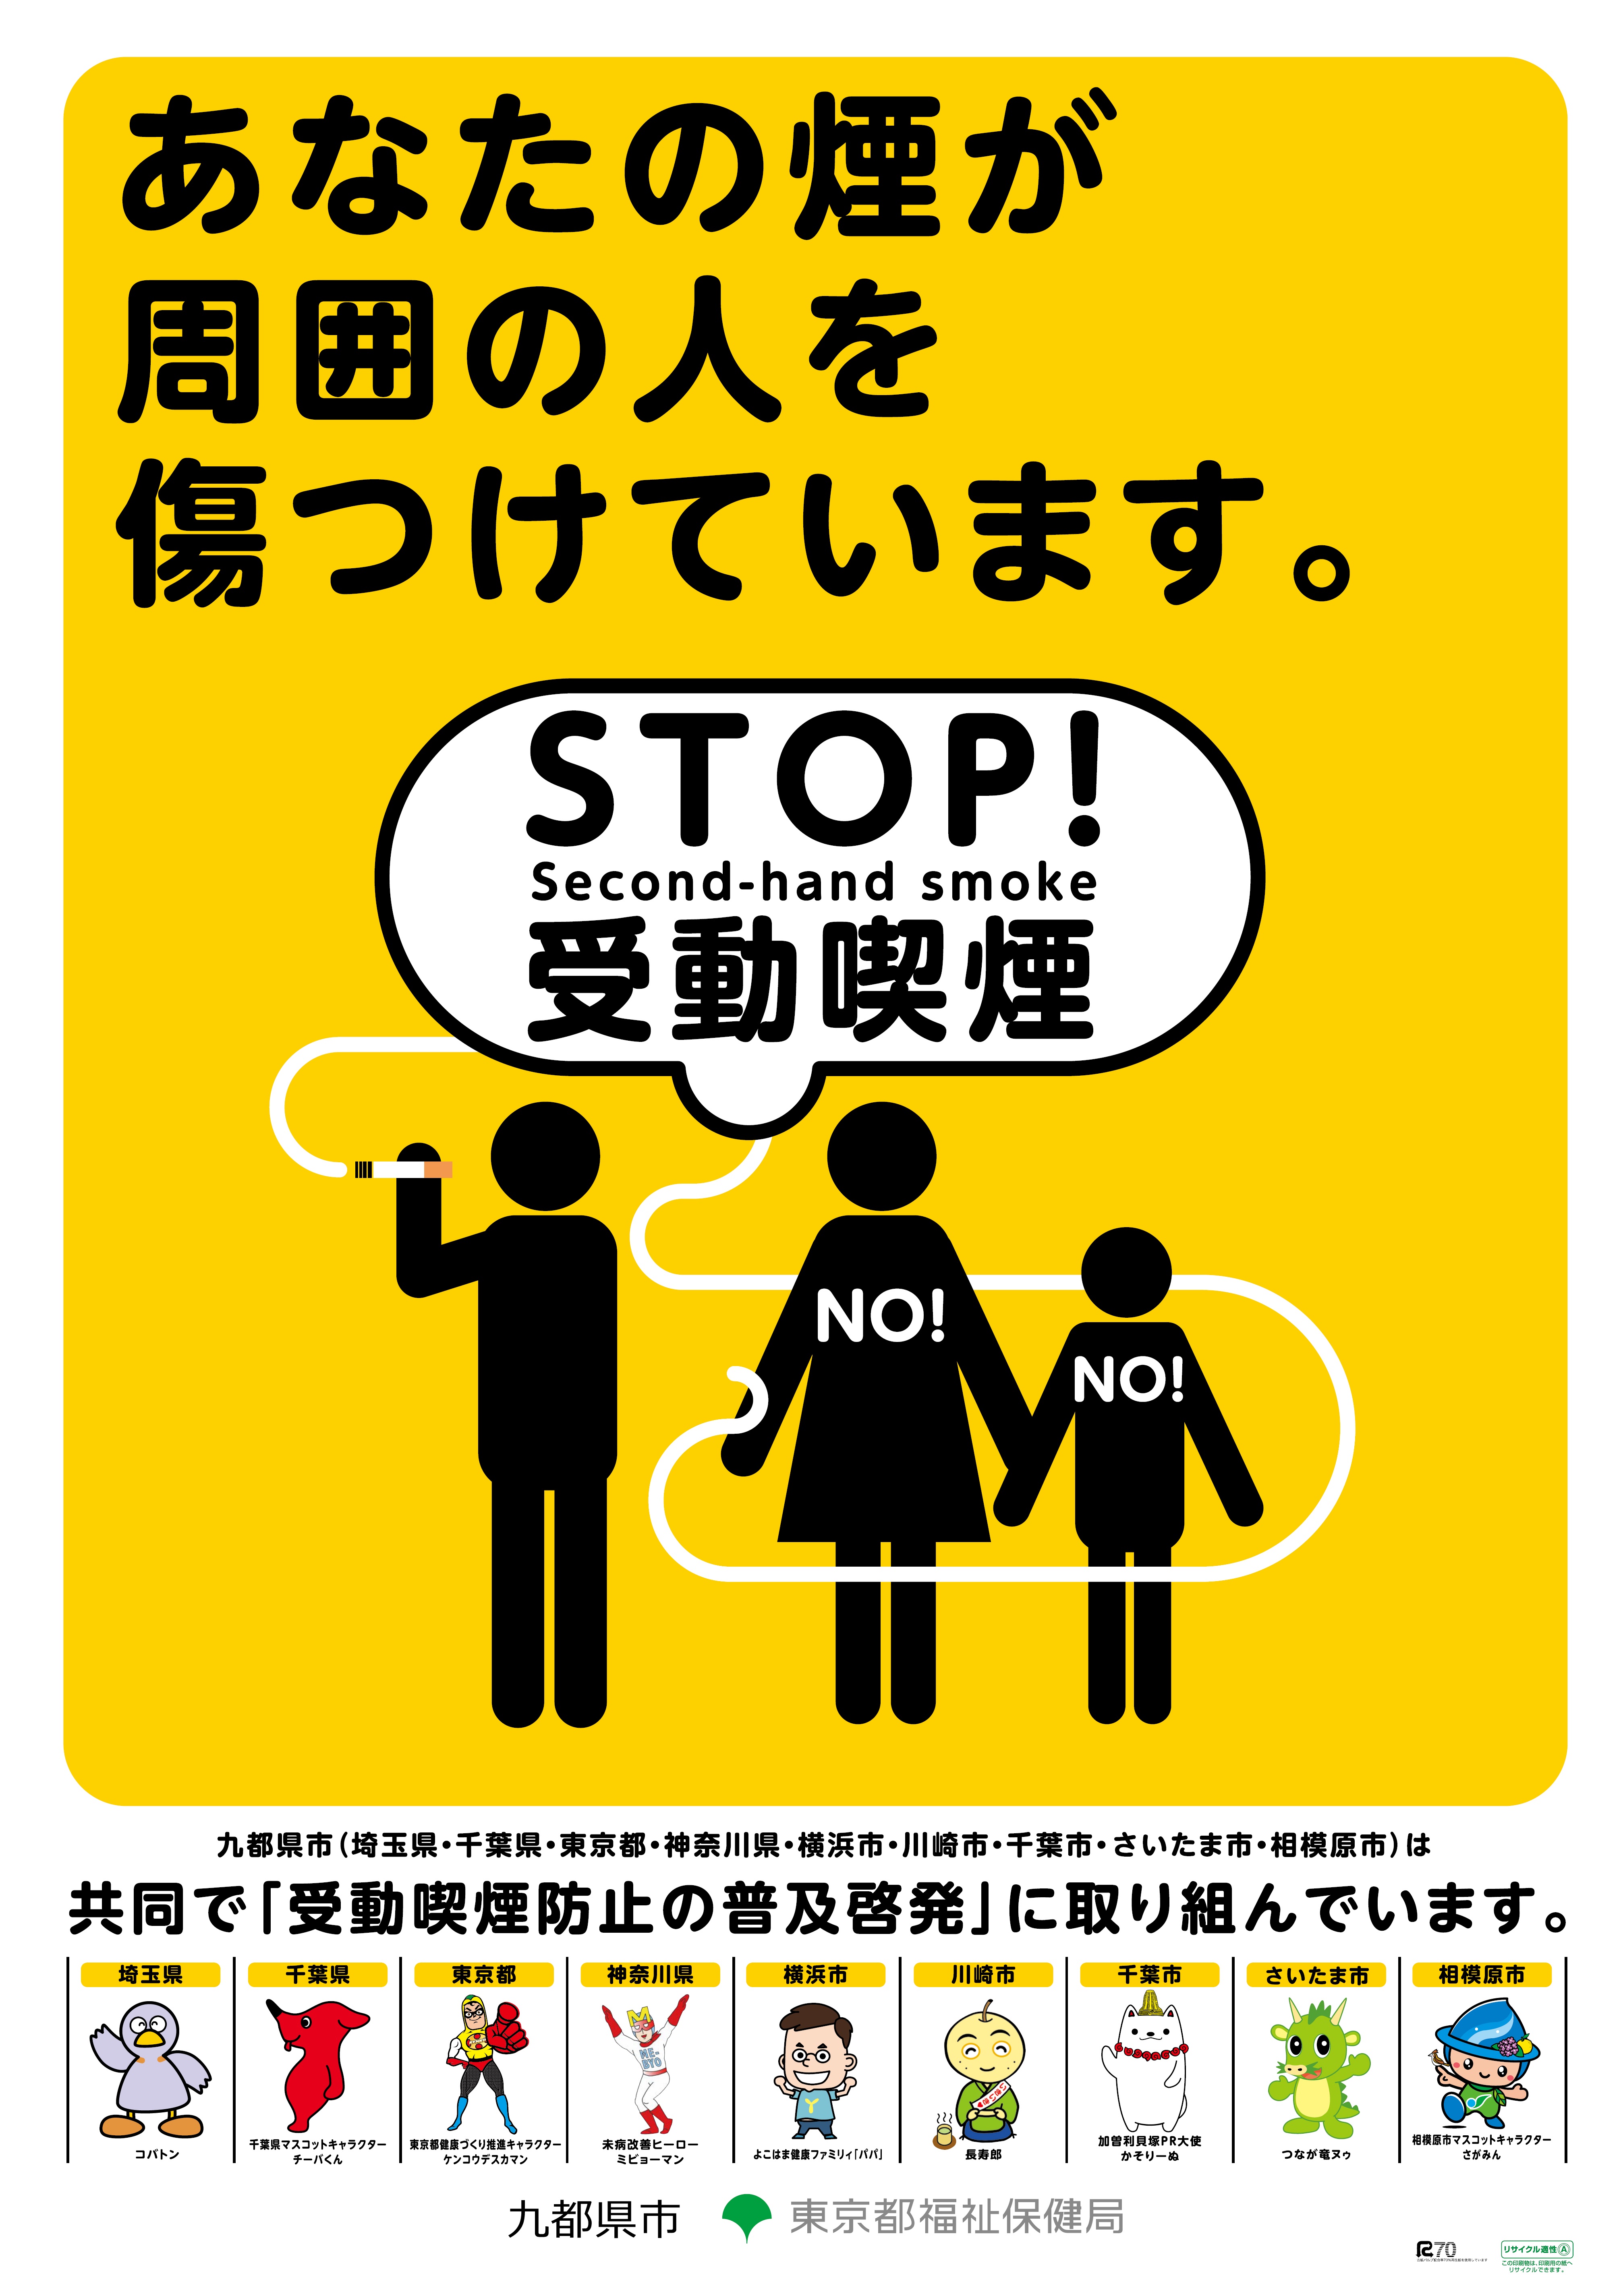 九都県市受動喫煙防止対策啓発ポスター とうきょう健康ステーション